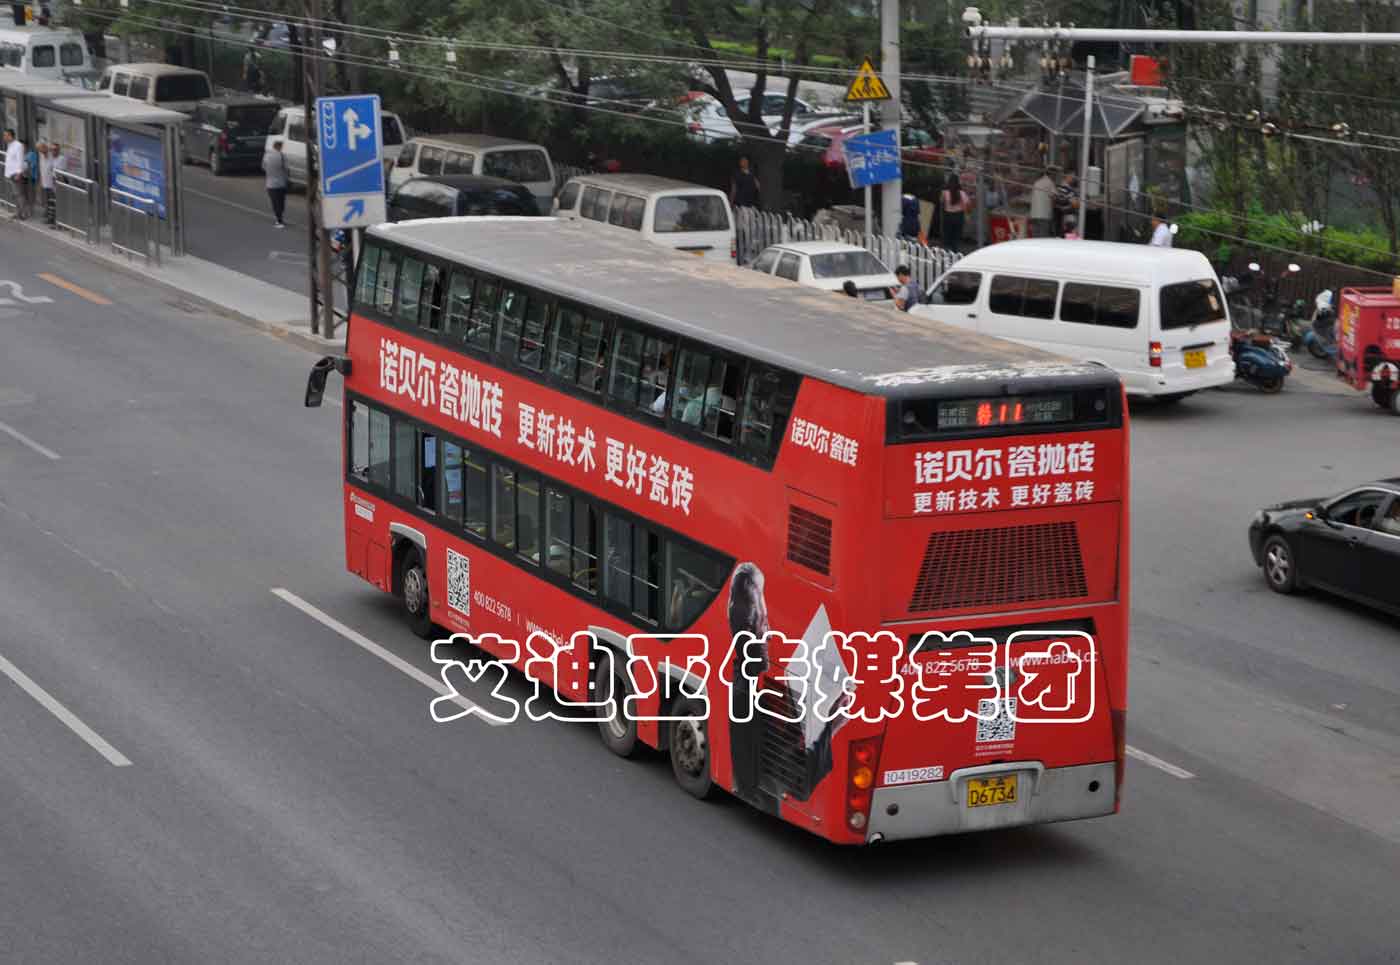 公交车广告案例图片-百乐博